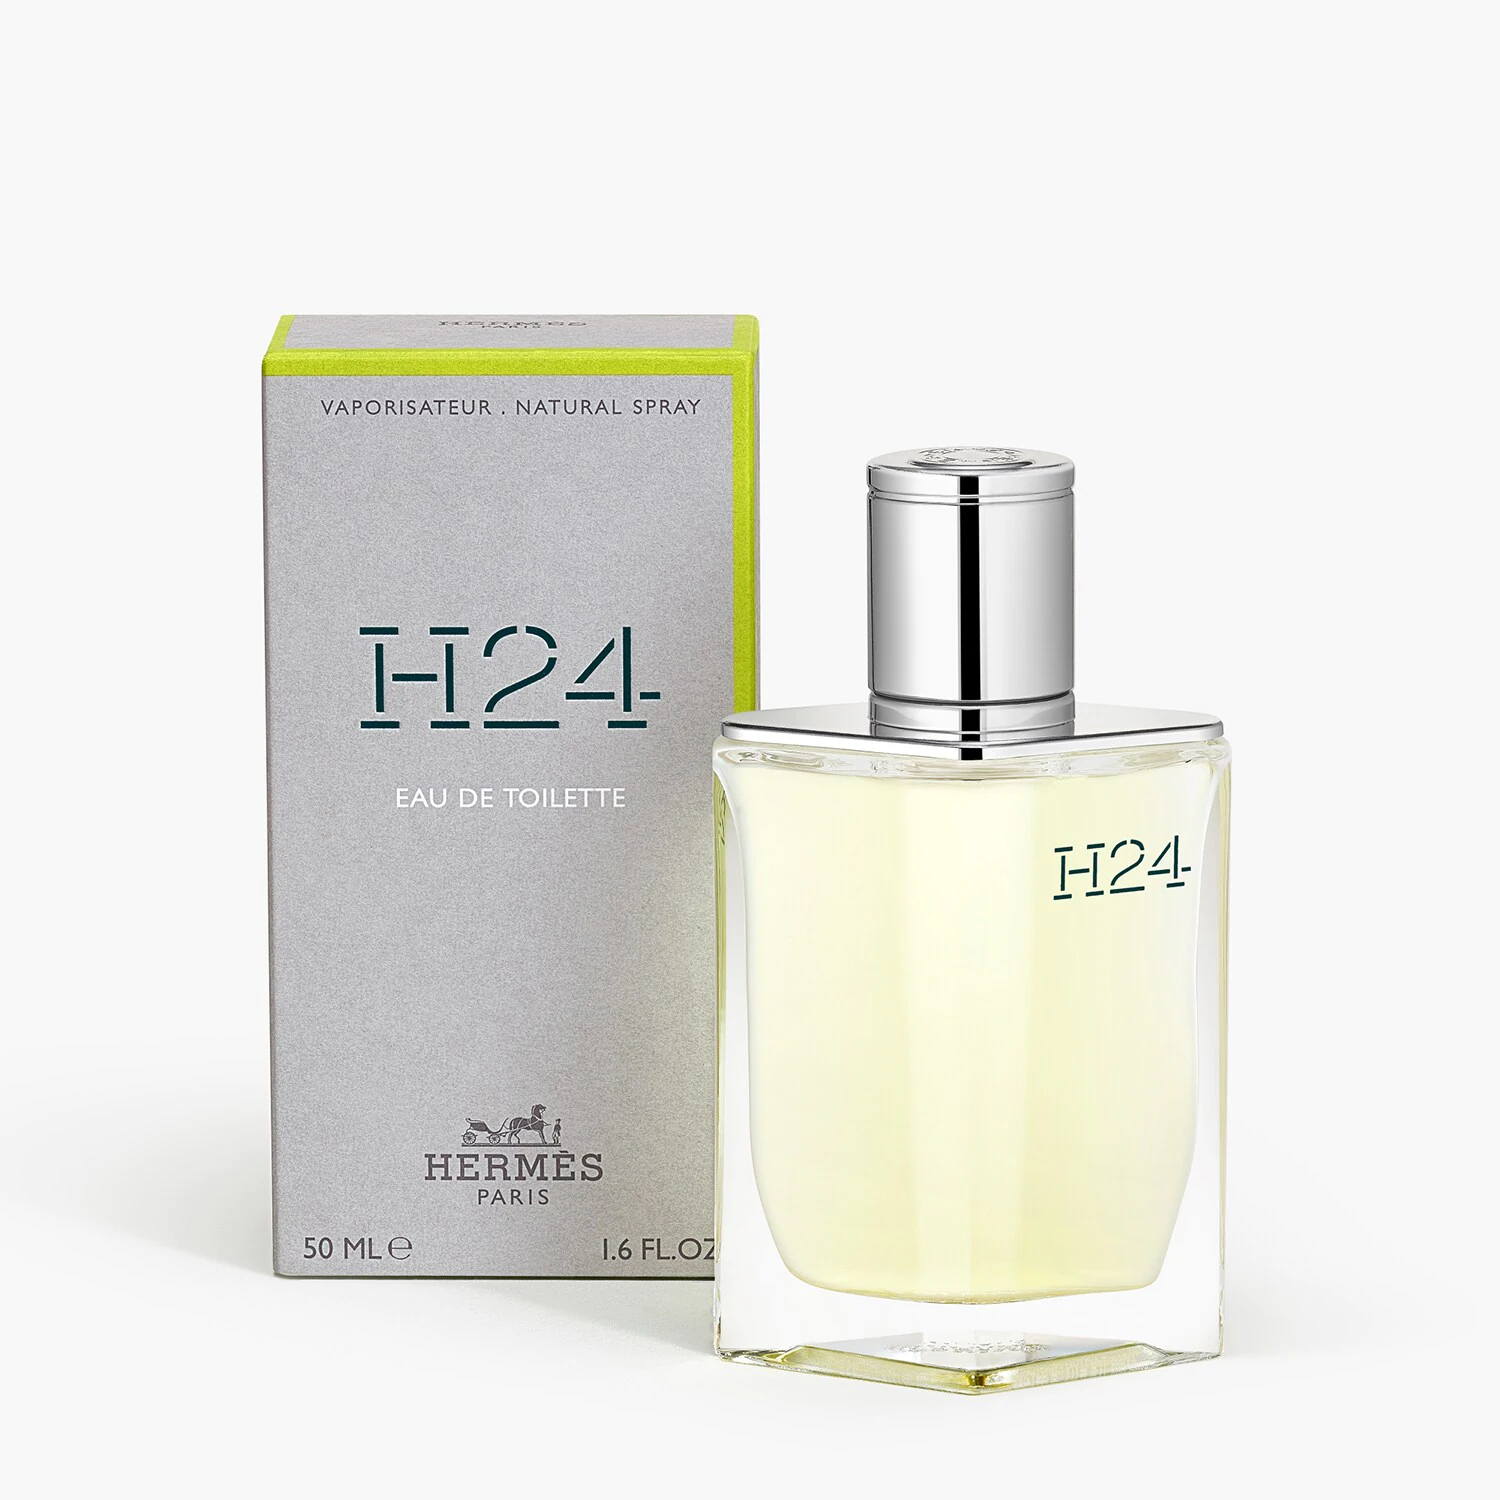 H24 Hermes meilleur parfum de l'année